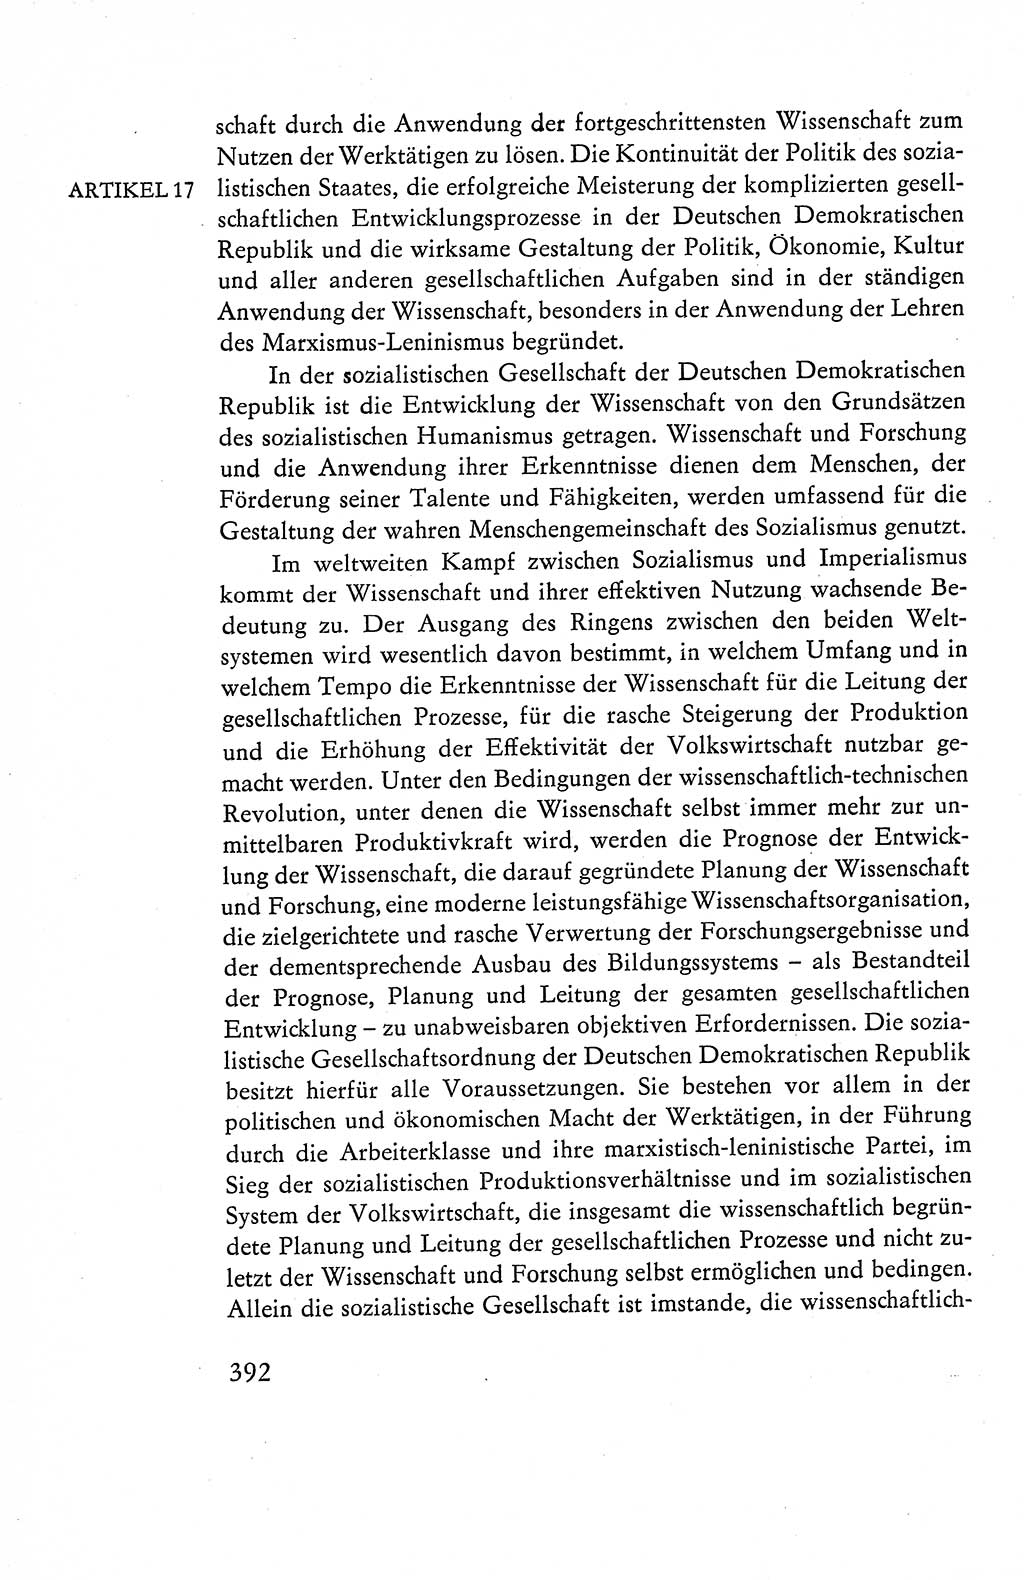 Verfassung der Deutschen Demokratischen Republik (DDR), Dokumente, Kommentar 1969, Band 1, Seite 392 (Verf. DDR Dok. Komm. 1969, Bd. 1, S. 392)